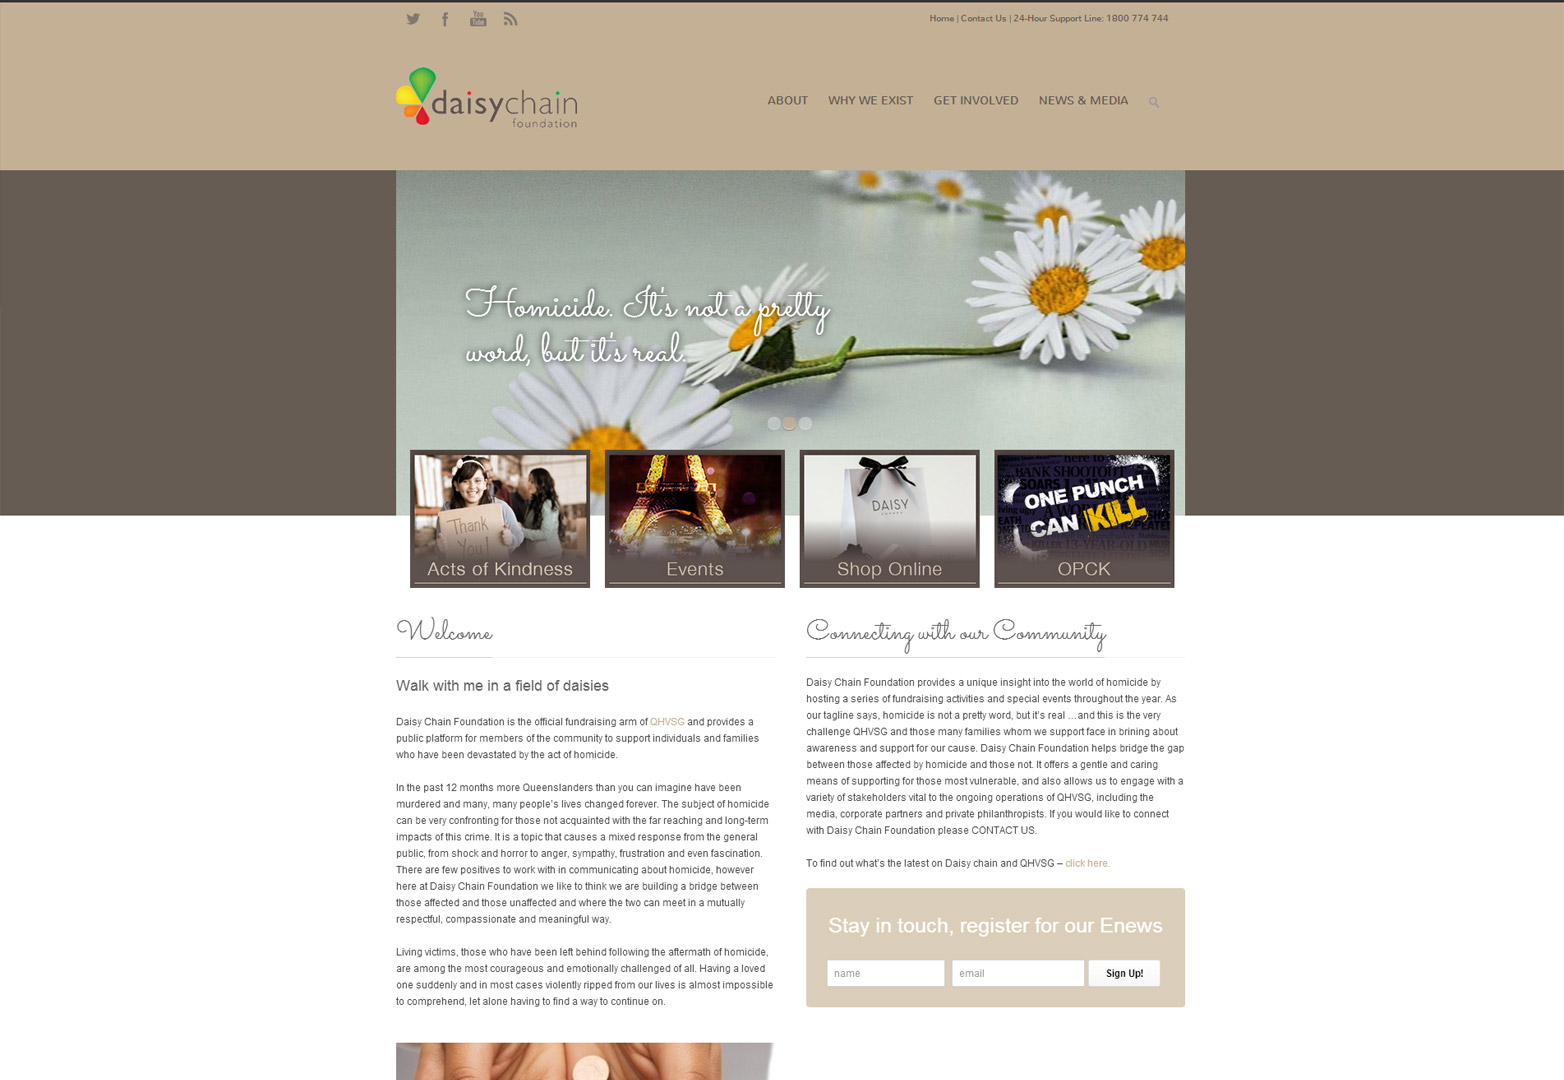 Daisychain Foundation homepage in desktop view